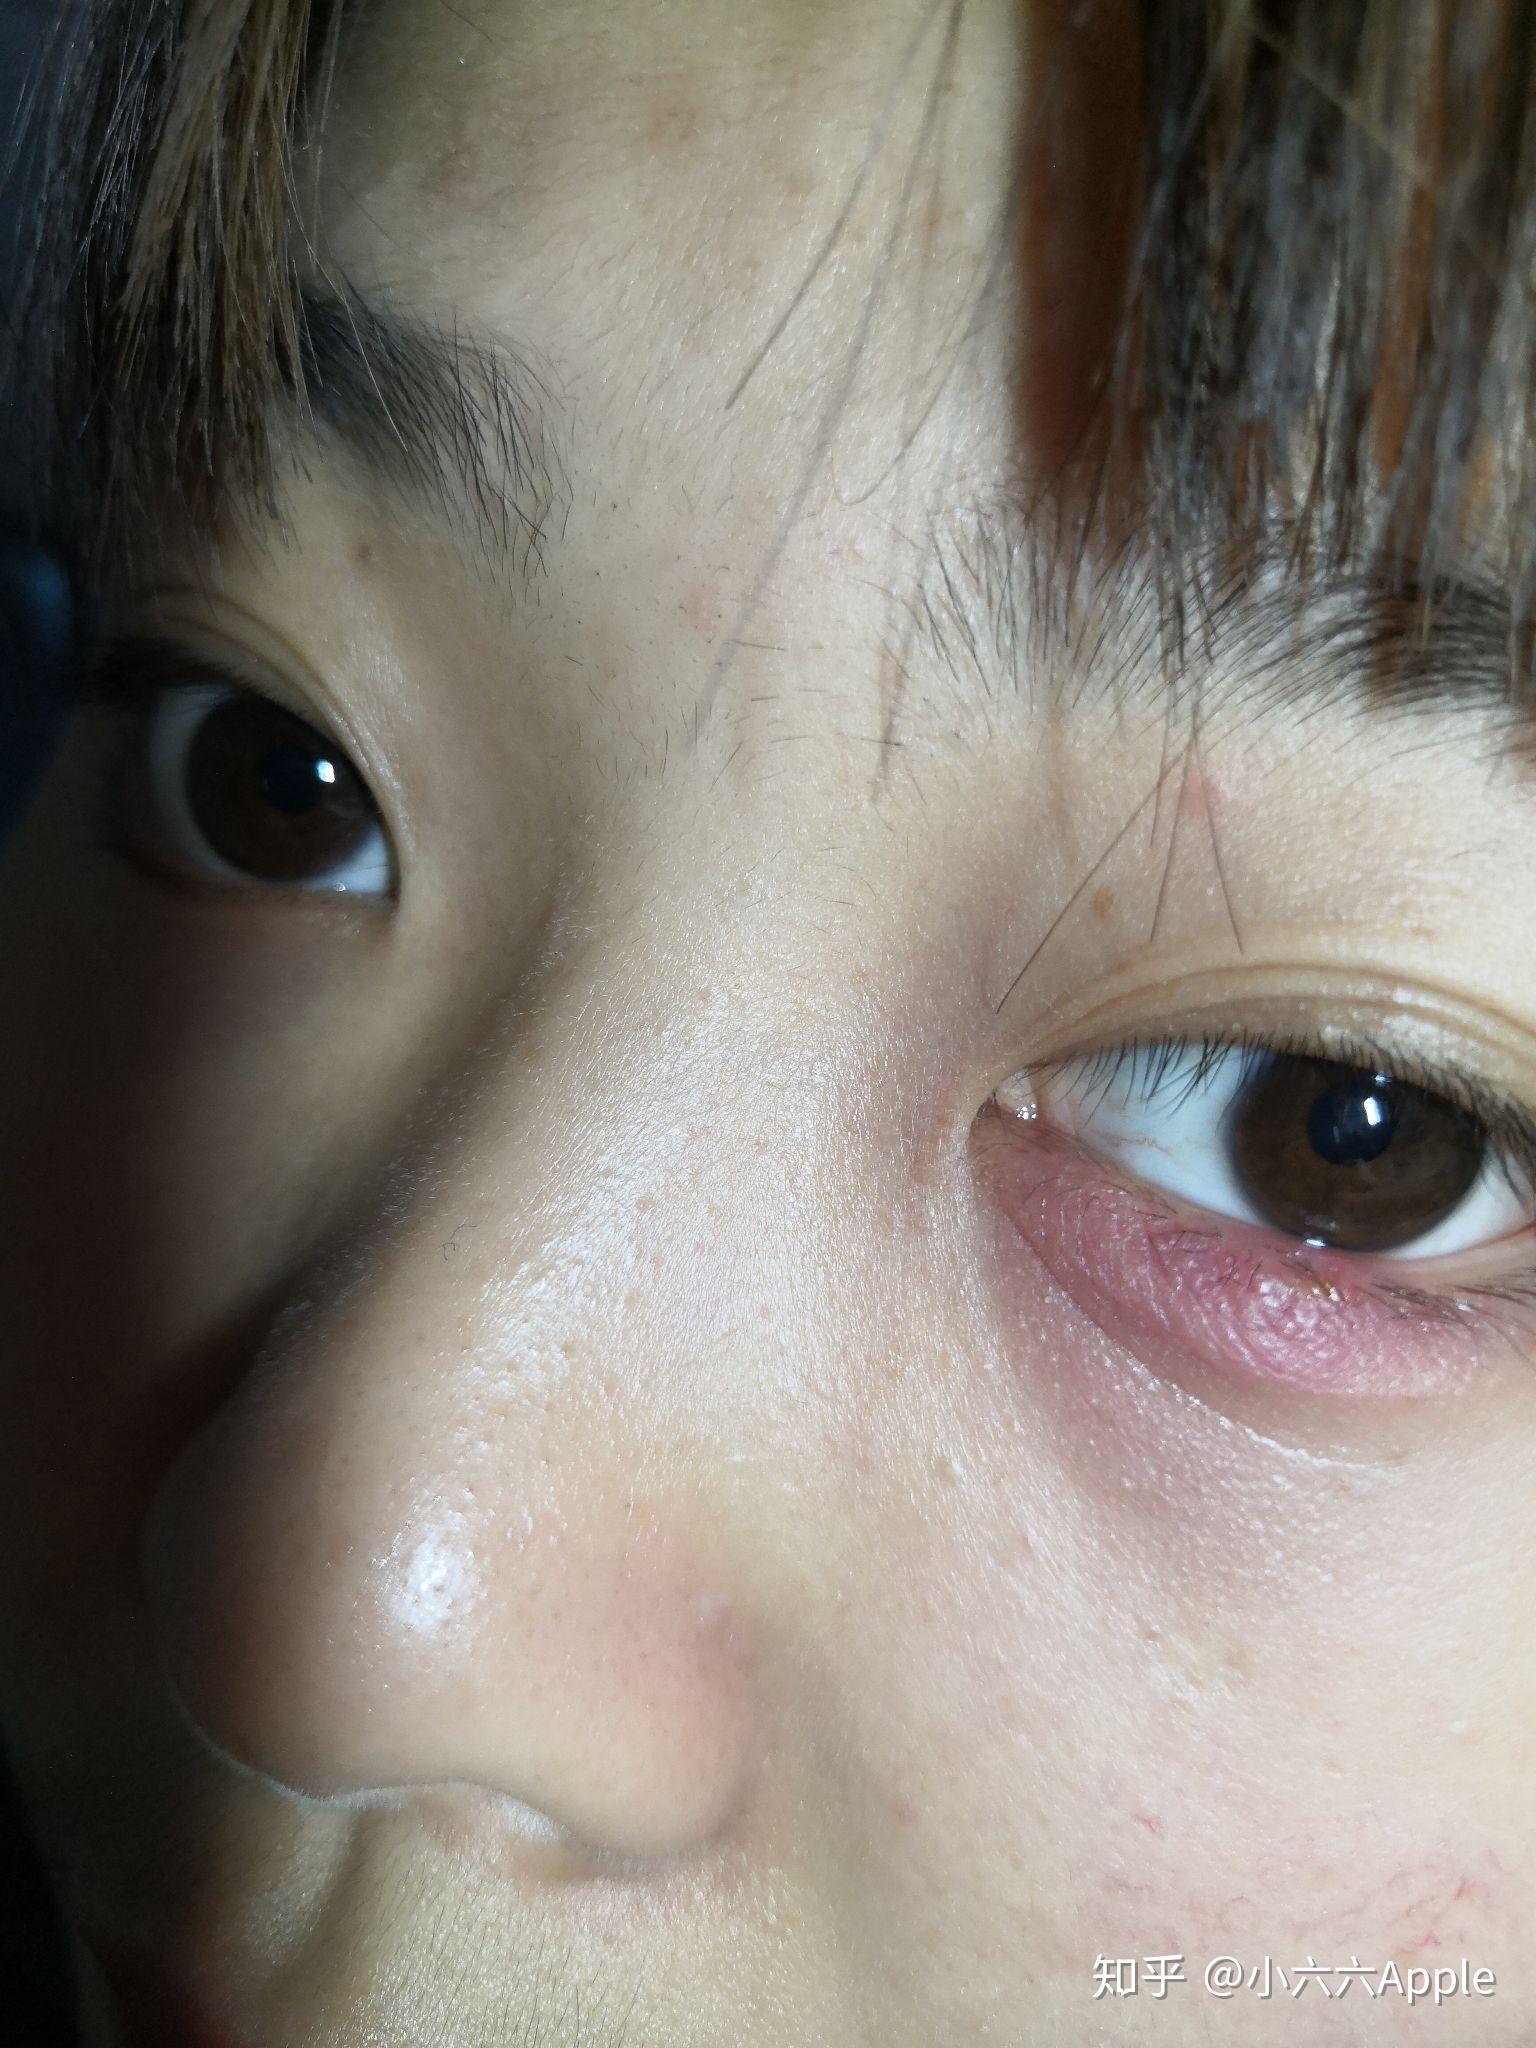 Jęczmień na oku u dziecka - przyczyny, objawy, leczenie